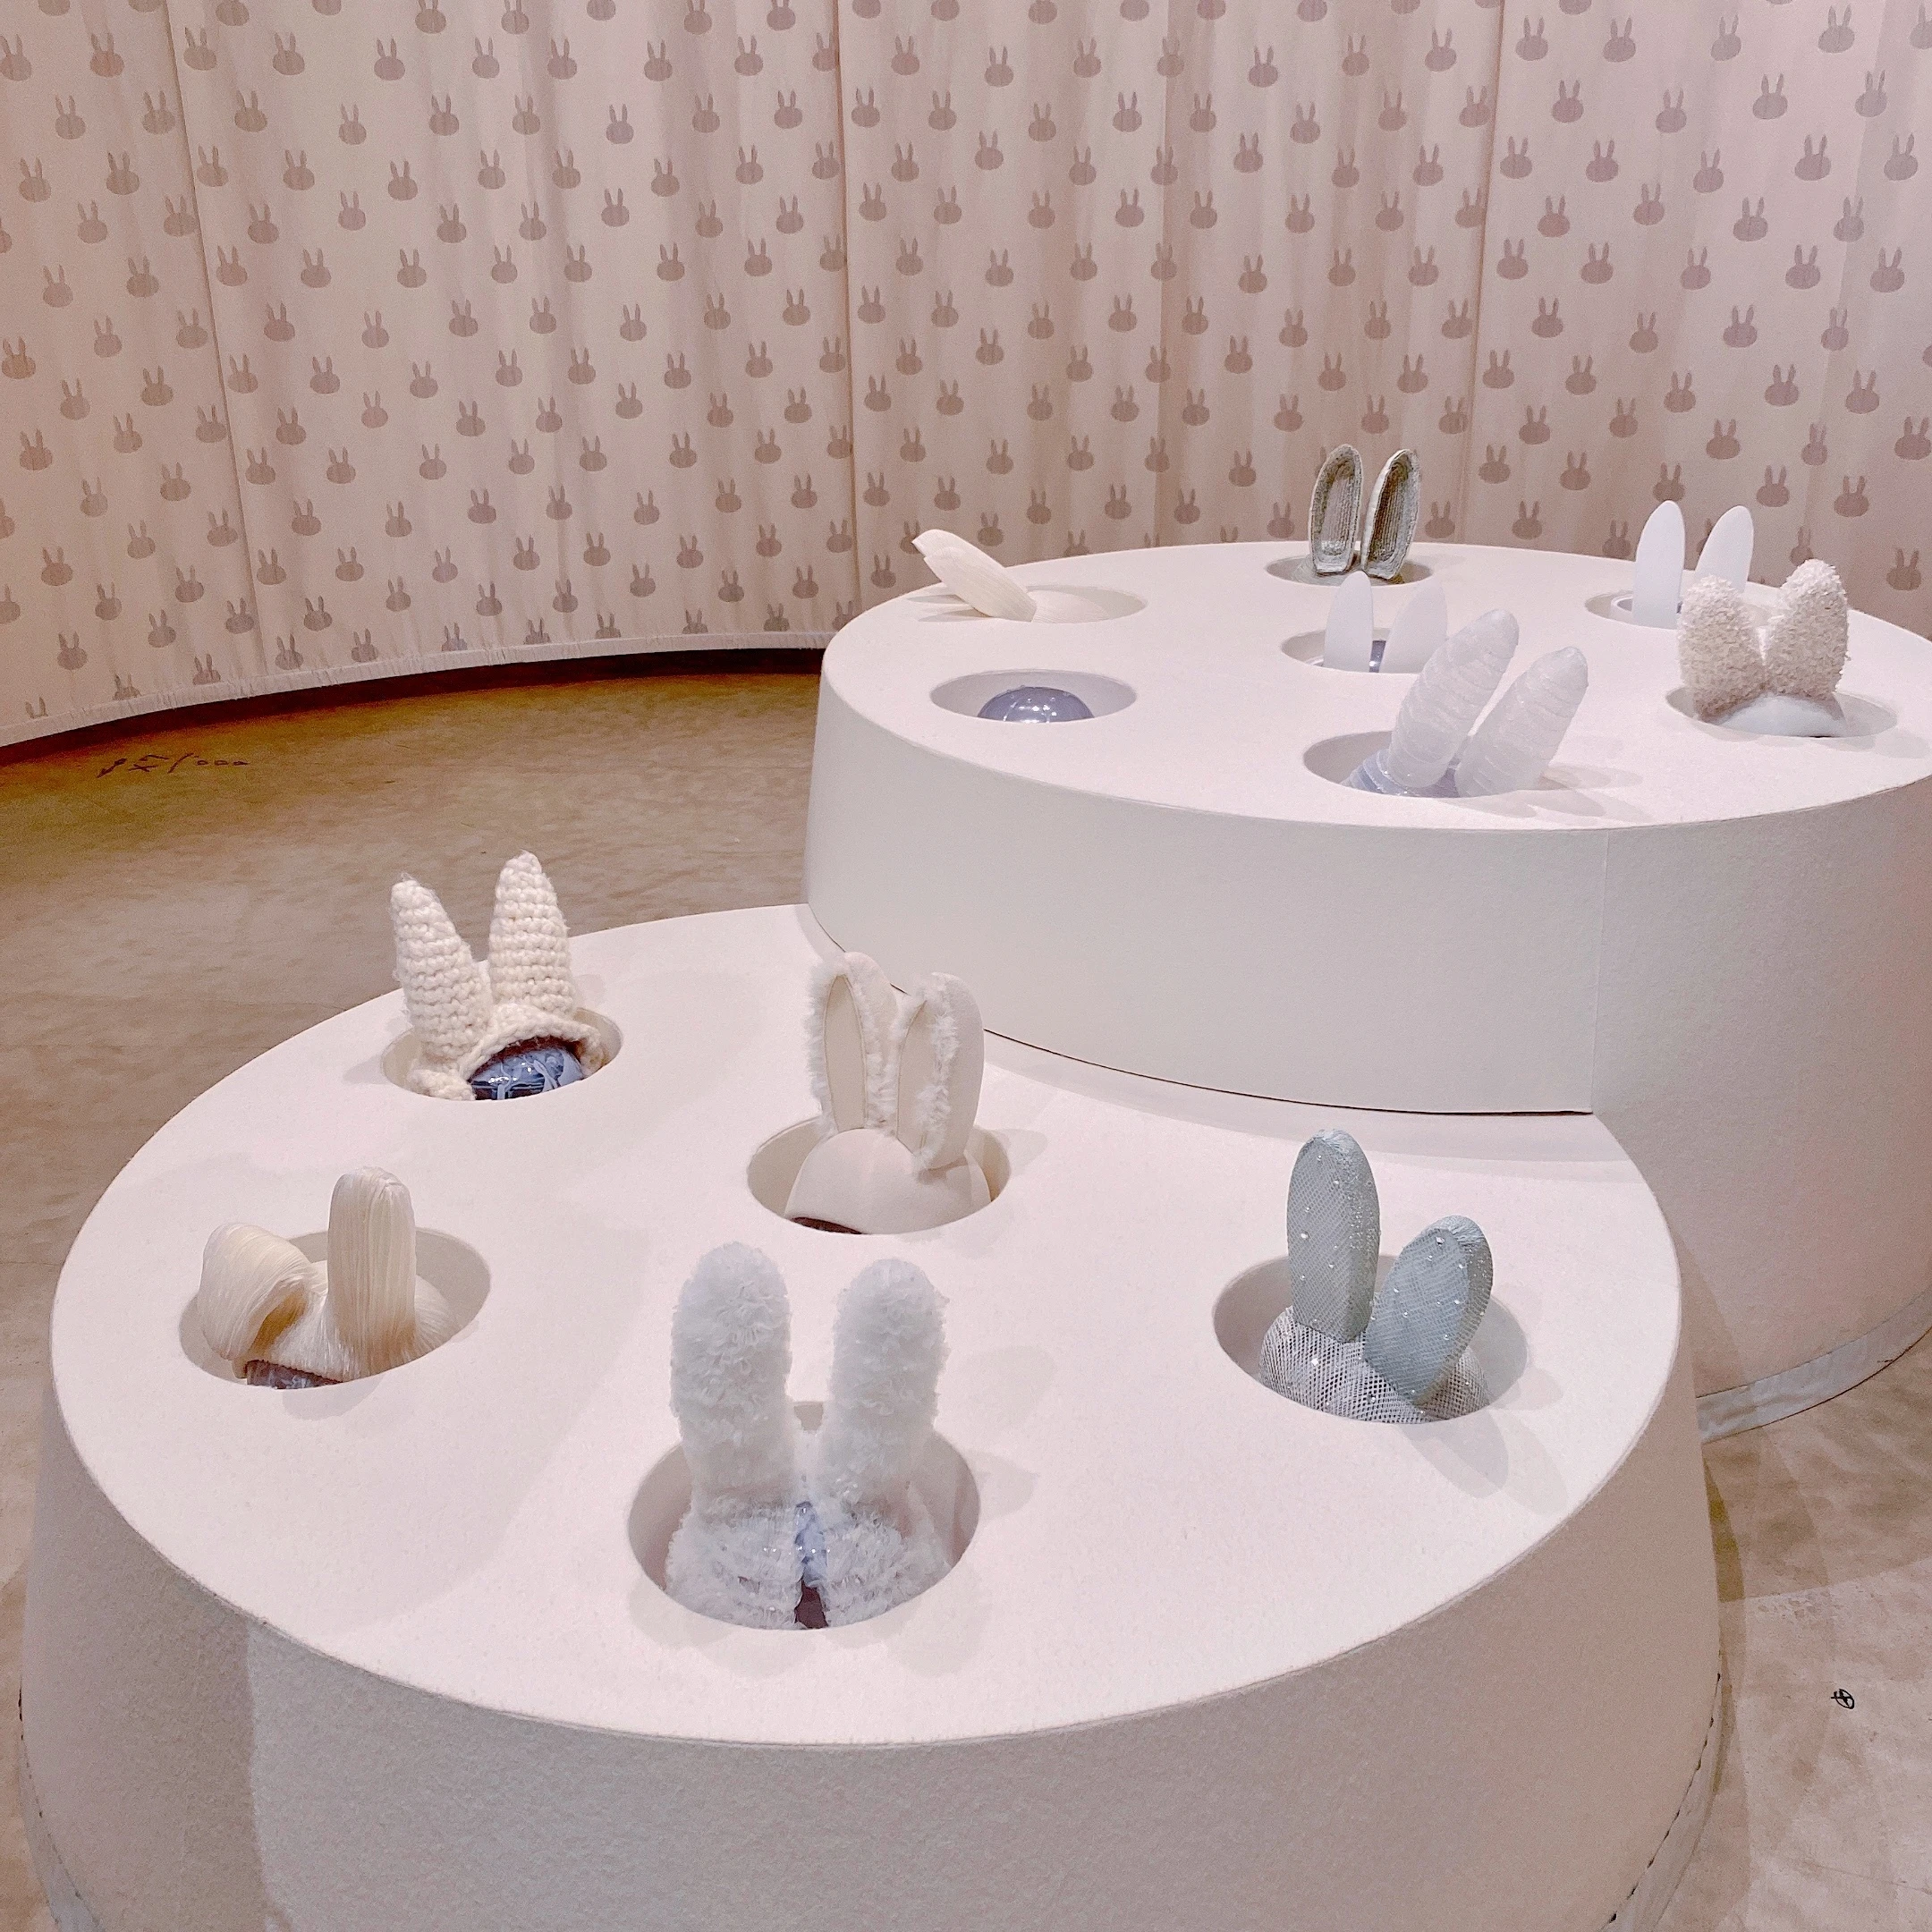 立川で開催中の「ミッフィー展」では、ミッフィーの耳が飾られた展示も